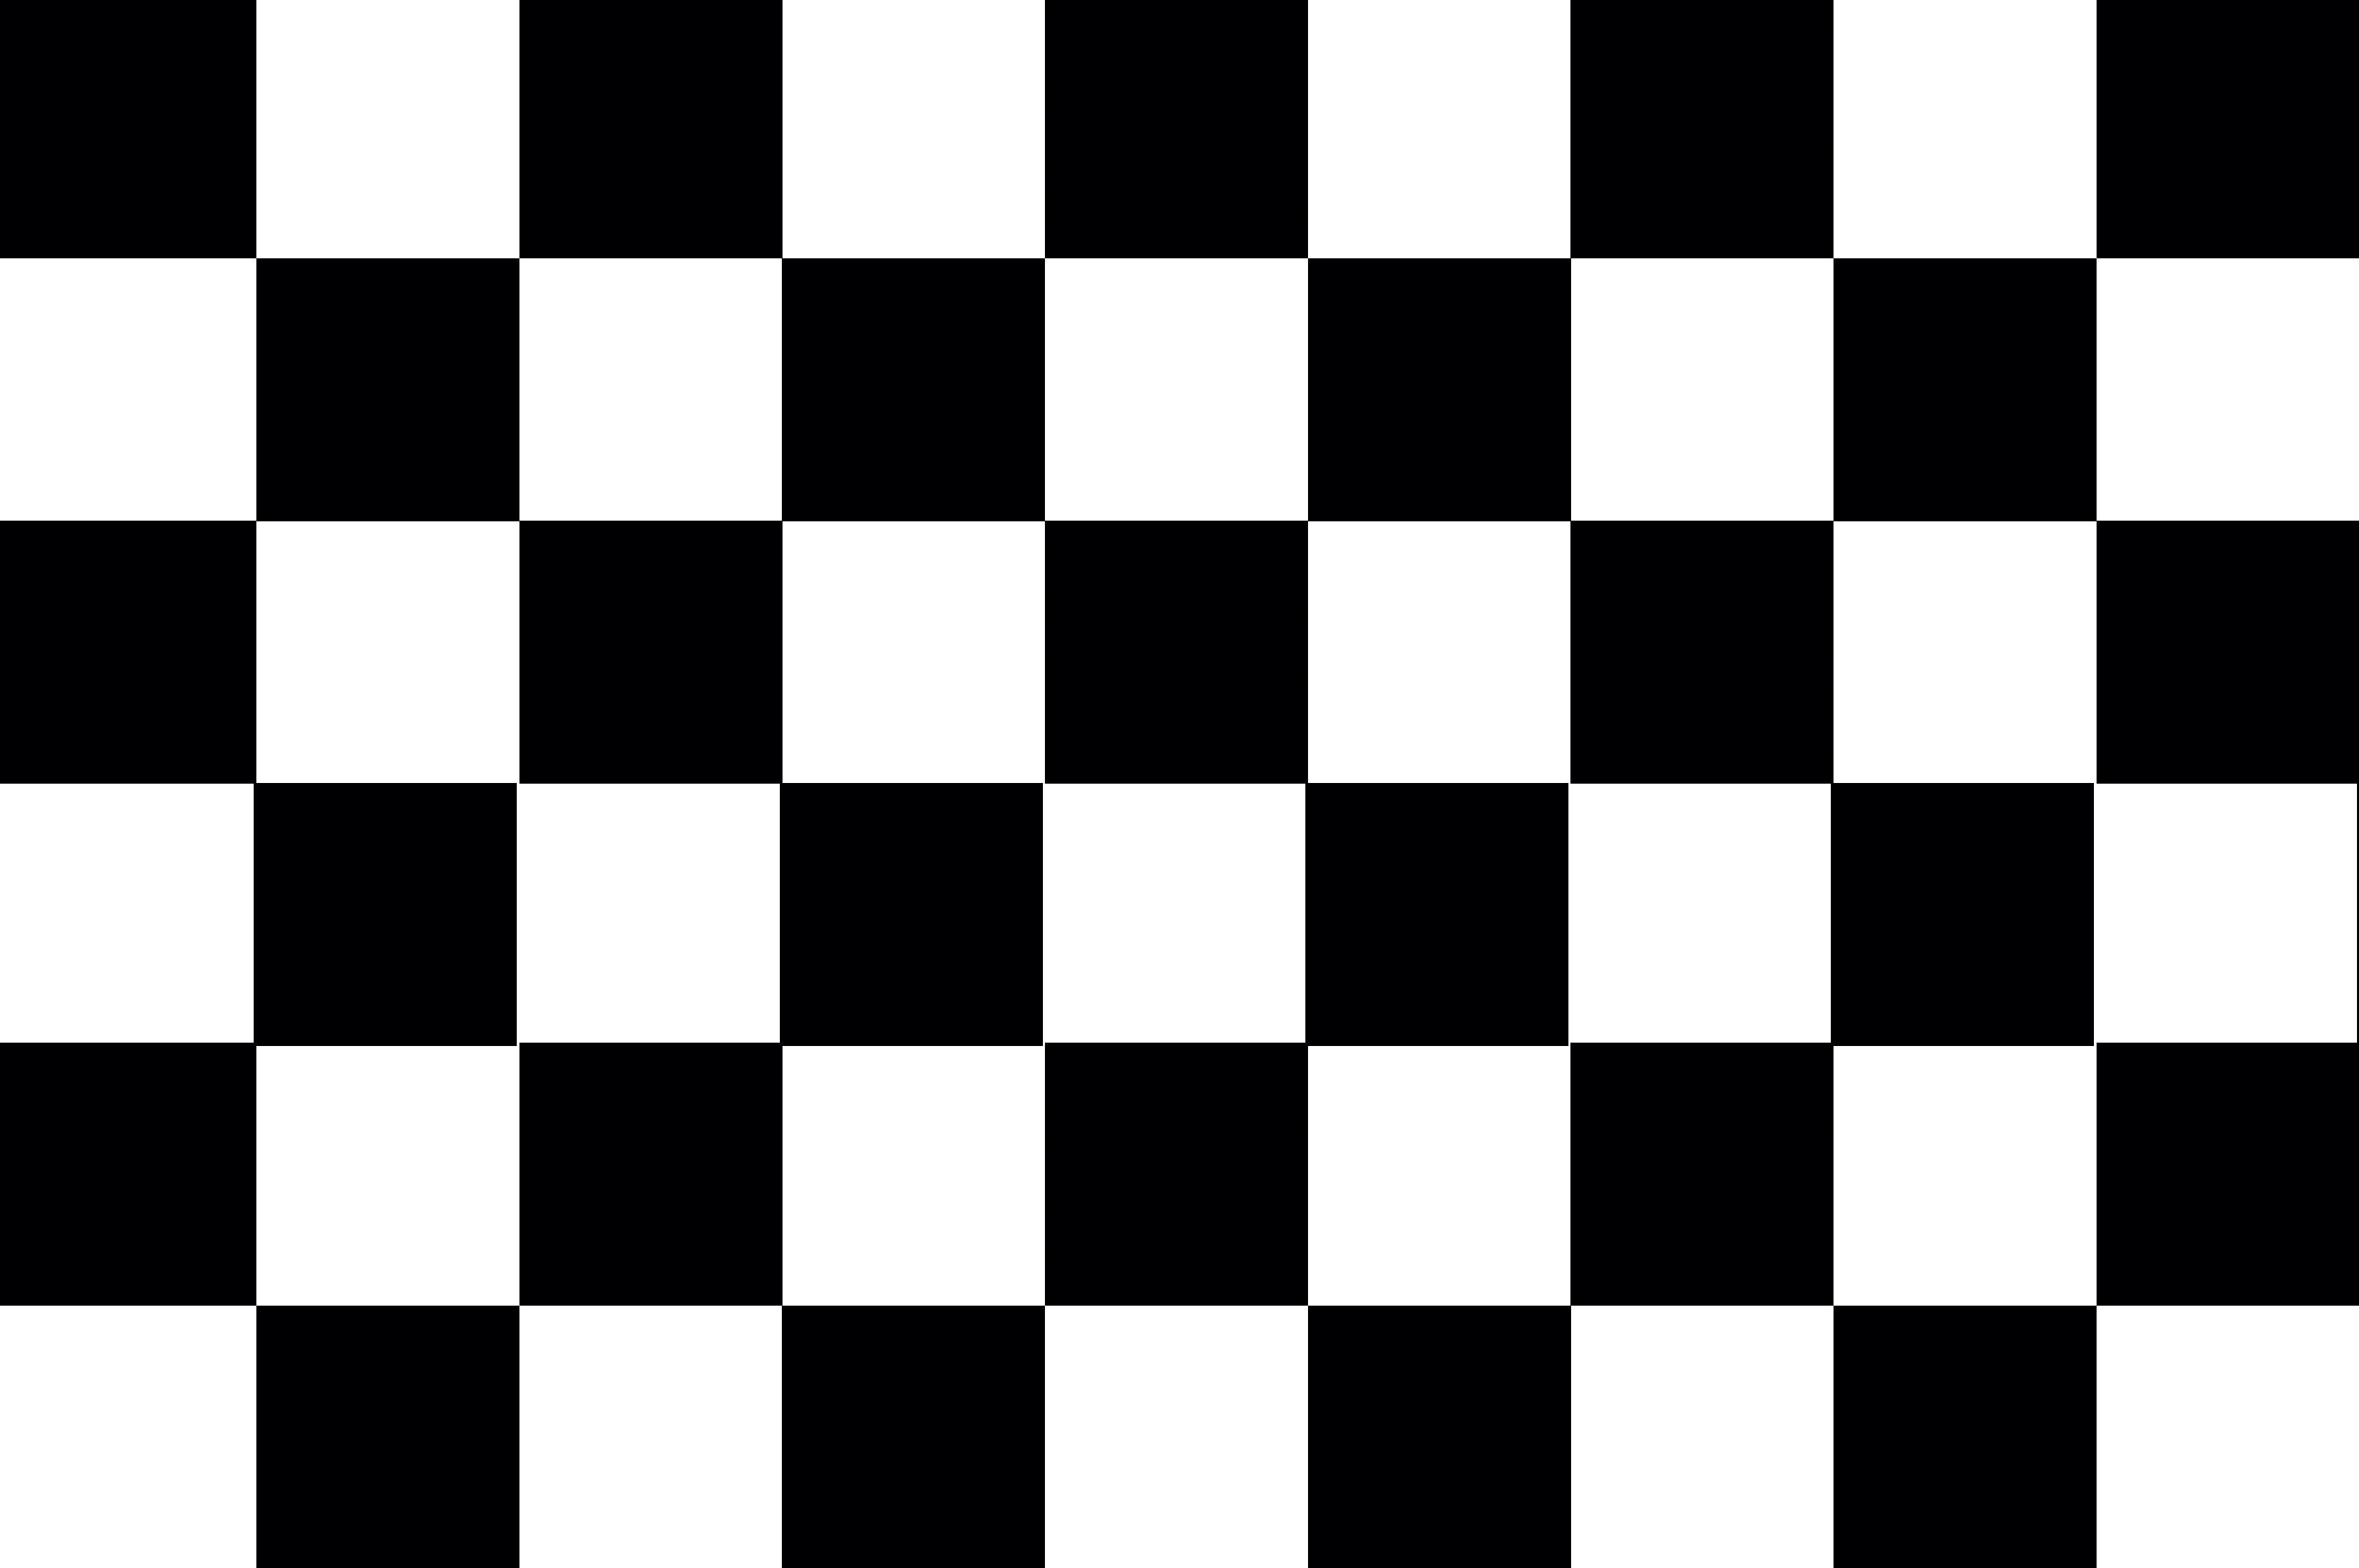 На шахматной доске 64 клетки поля. Шашечная доска для печати. Черно белые квадратики. Шахматная доска черно белая. Шахматная доска бело черная.